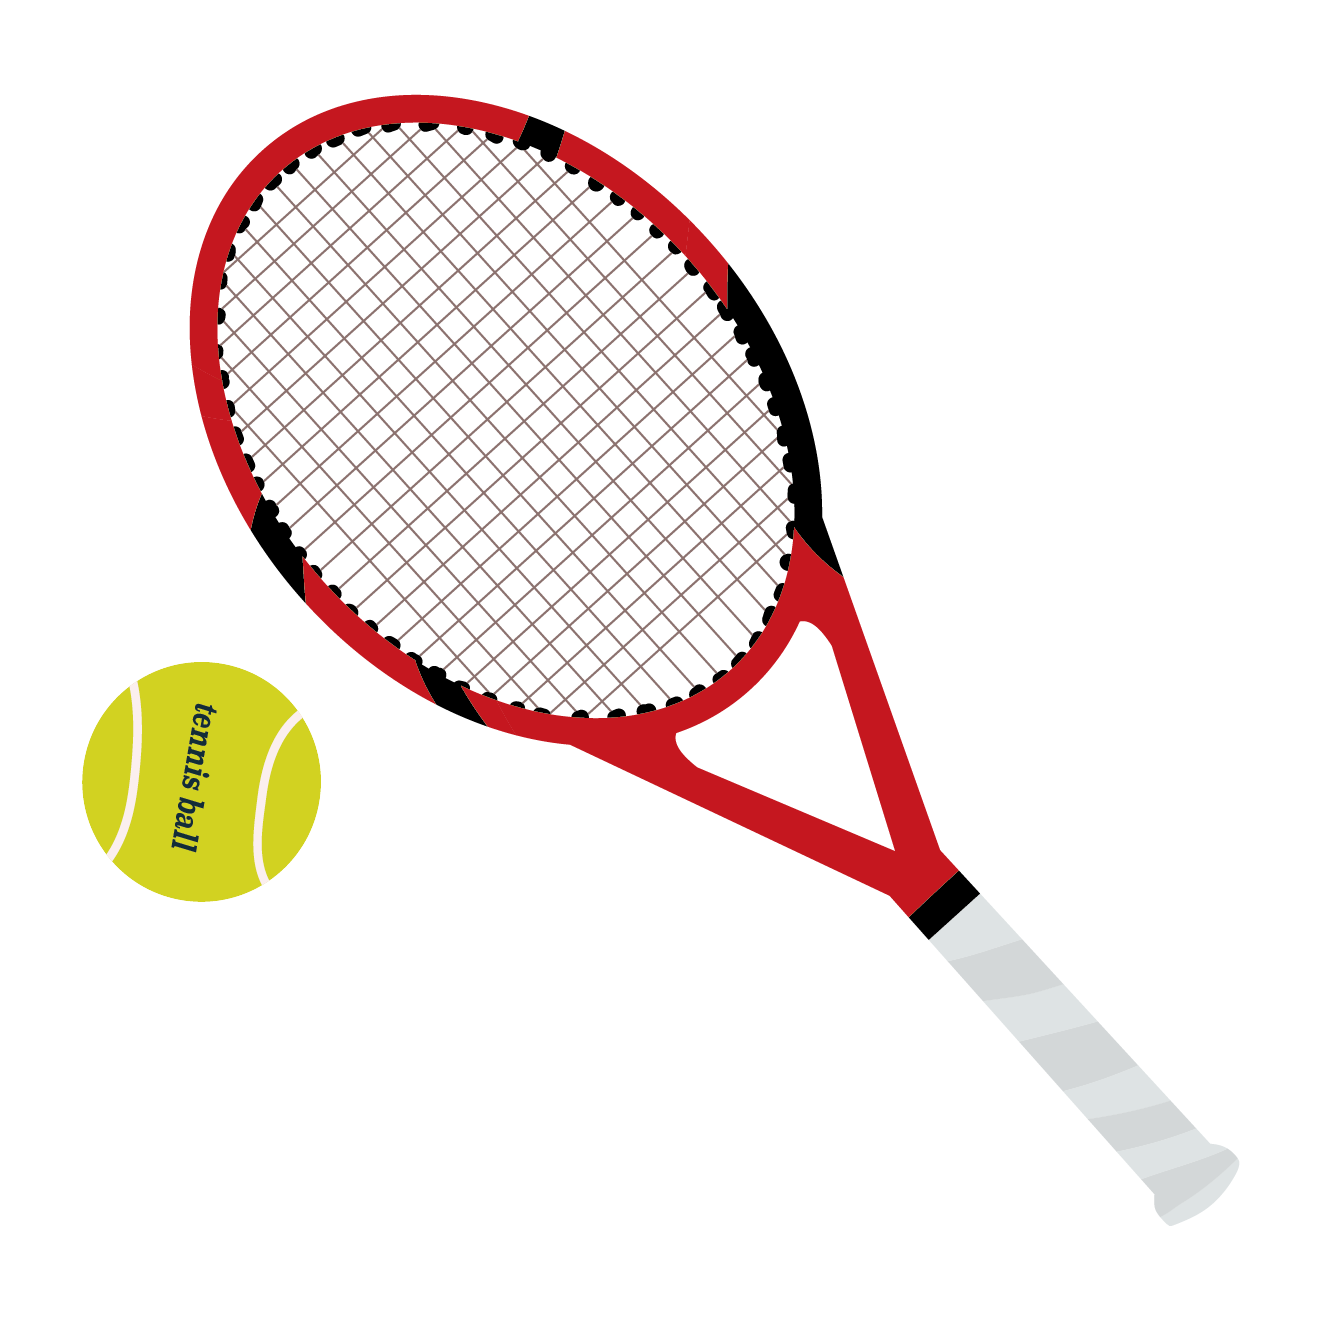 テニスラケット テニスボールの 無料 イラスト 商用フリー 無料 のイラスト素材なら イラストマンション